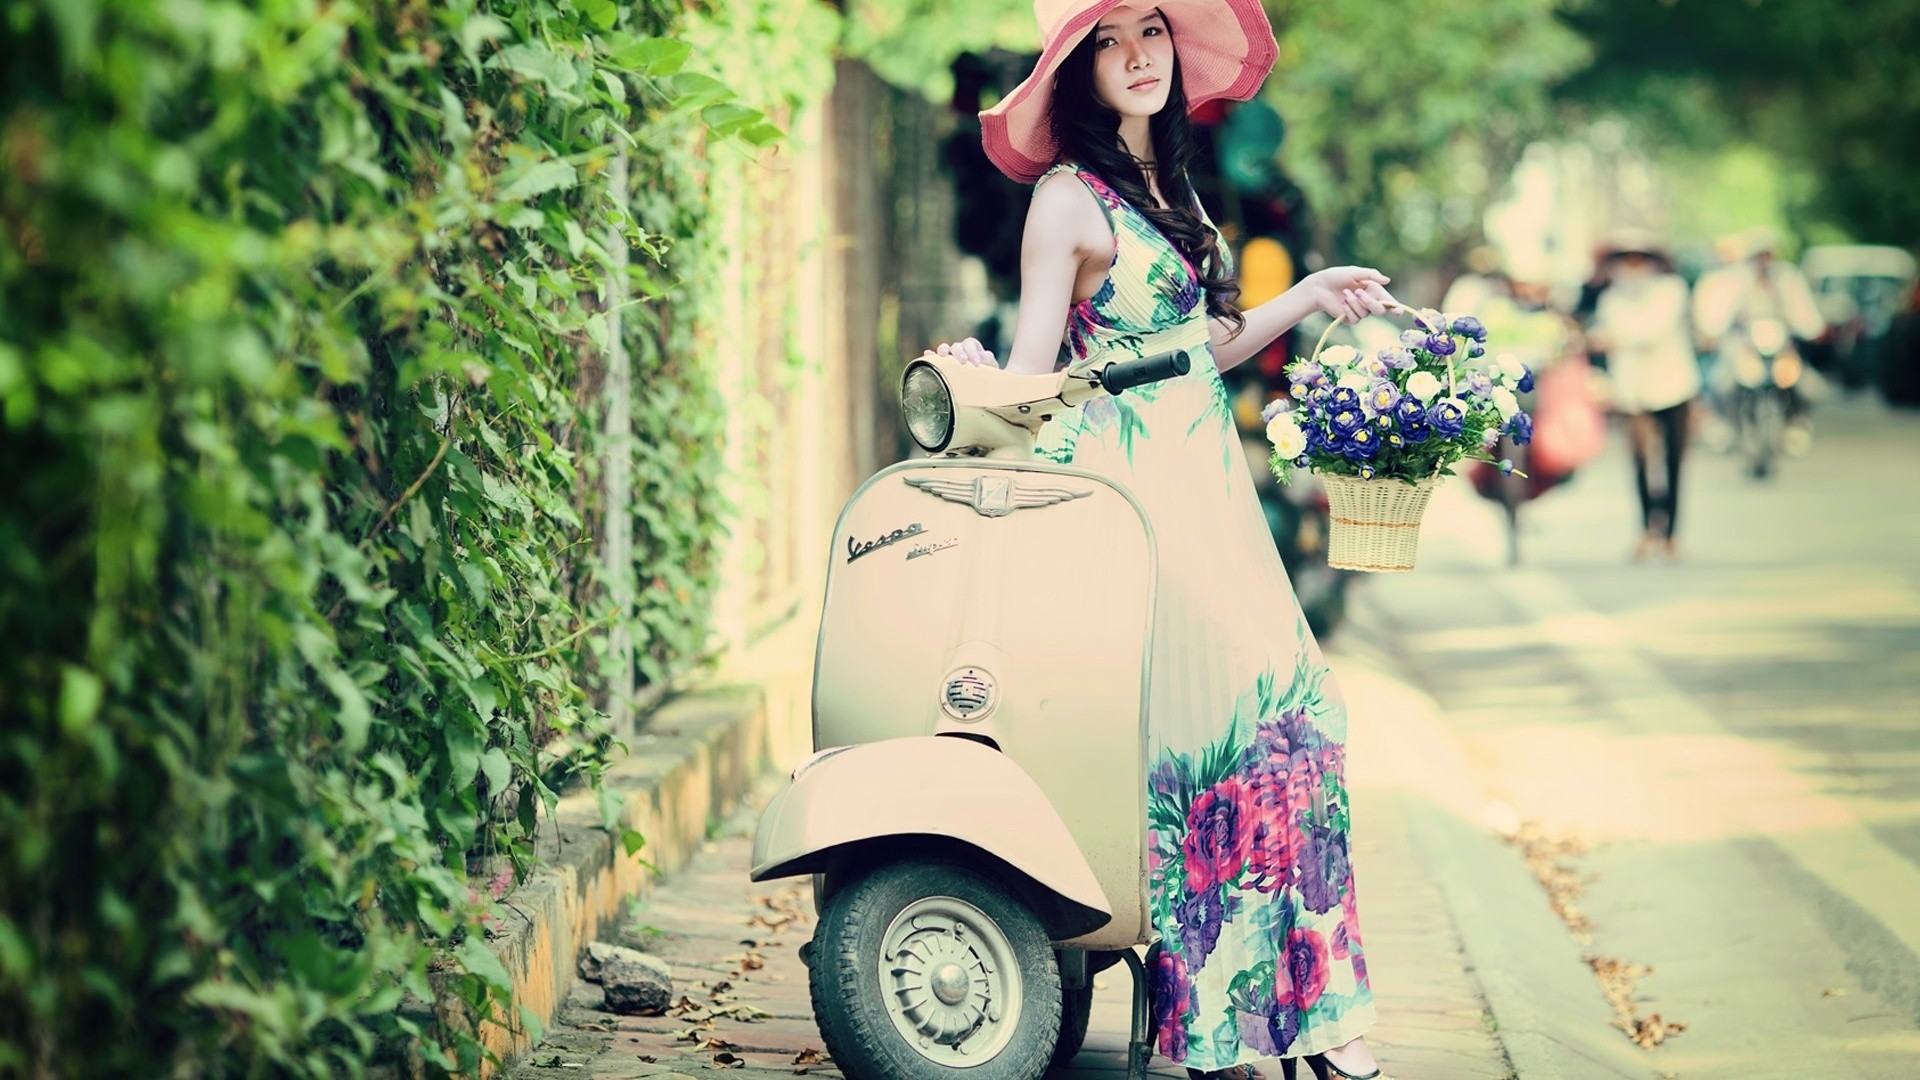 Women Model Asian Women With Hats Women With Bikes Flower Dress Flowers Women Outdoors Brunette Port 1920x1080